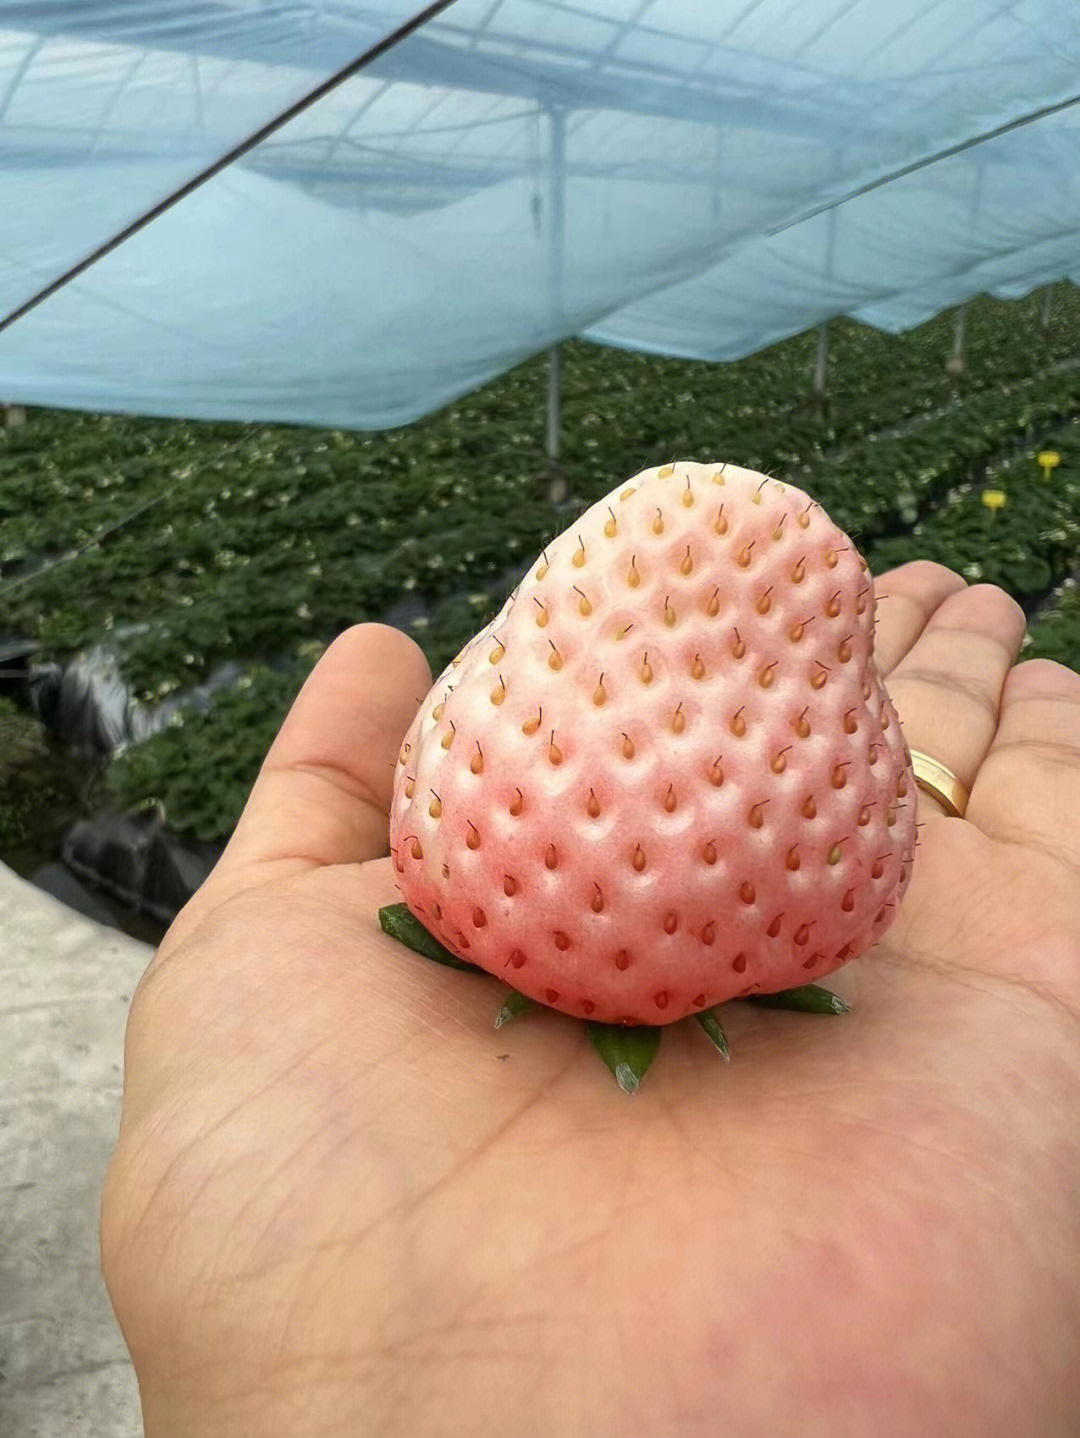 草莓208品种图片